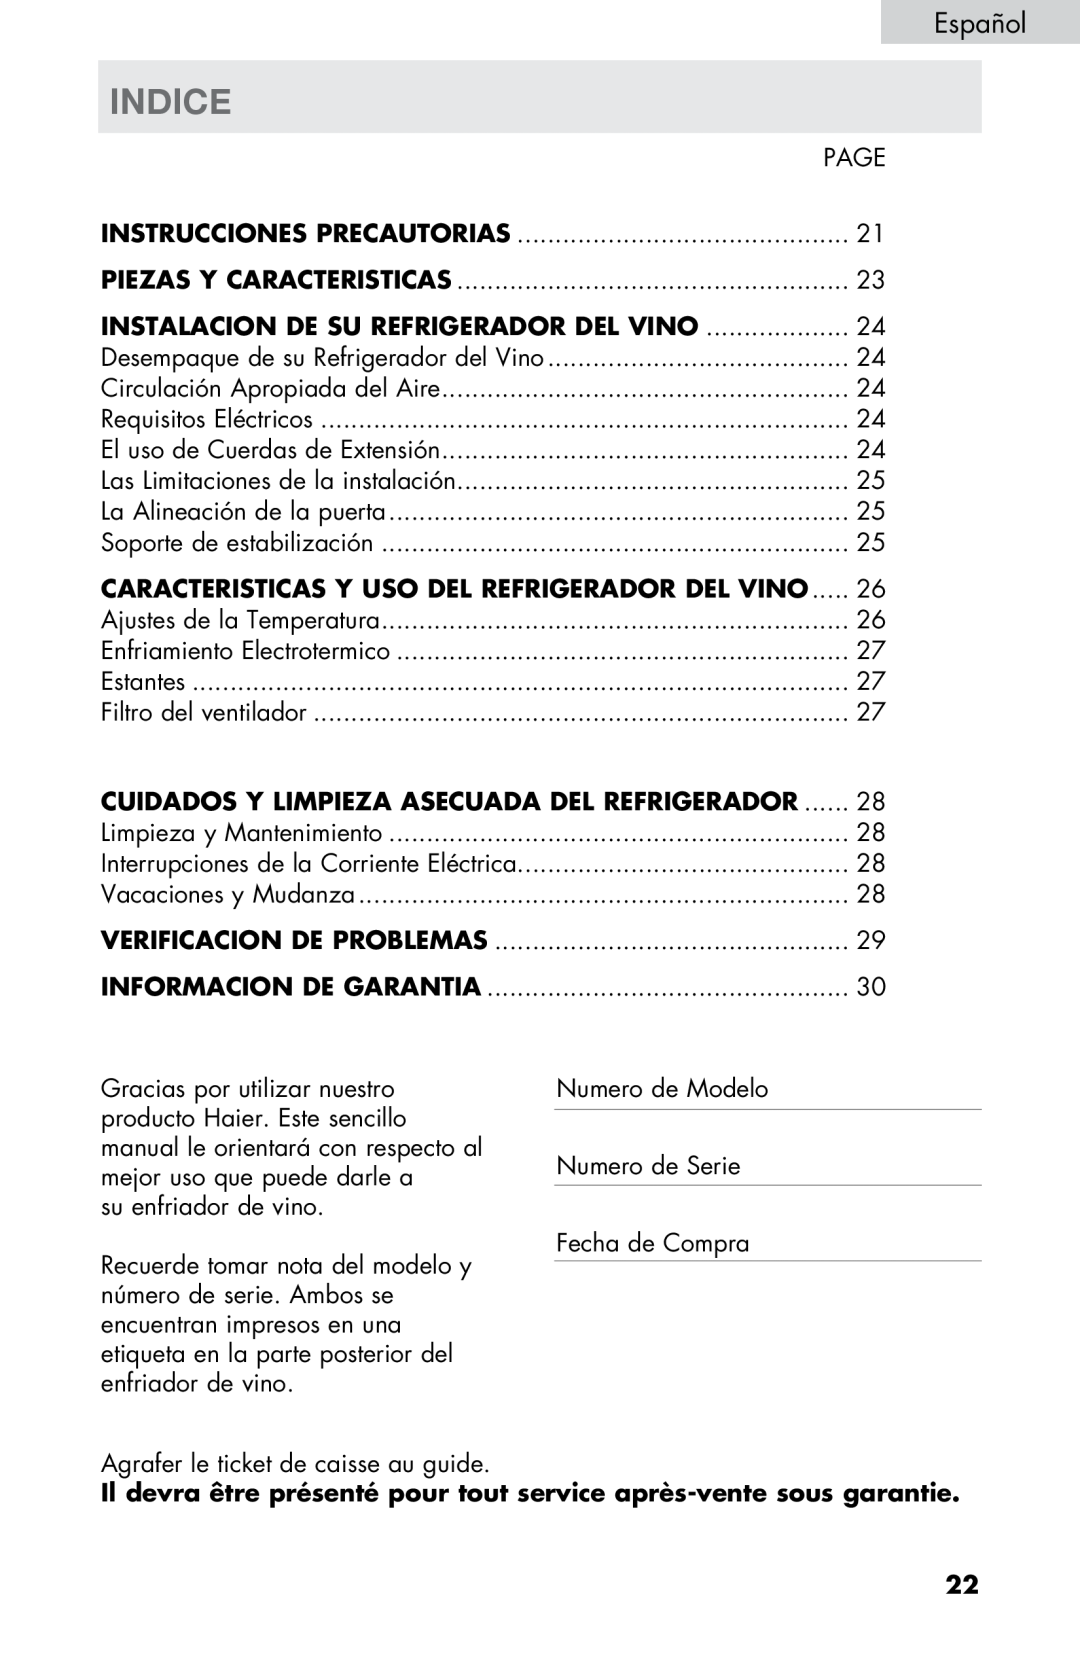 Haier HVTM08, HVTM16ABB Indice, Instalacion De Su Refrigerador Del Vino, Caracteristicas Y Uso Del Refrigerador Del Vino 